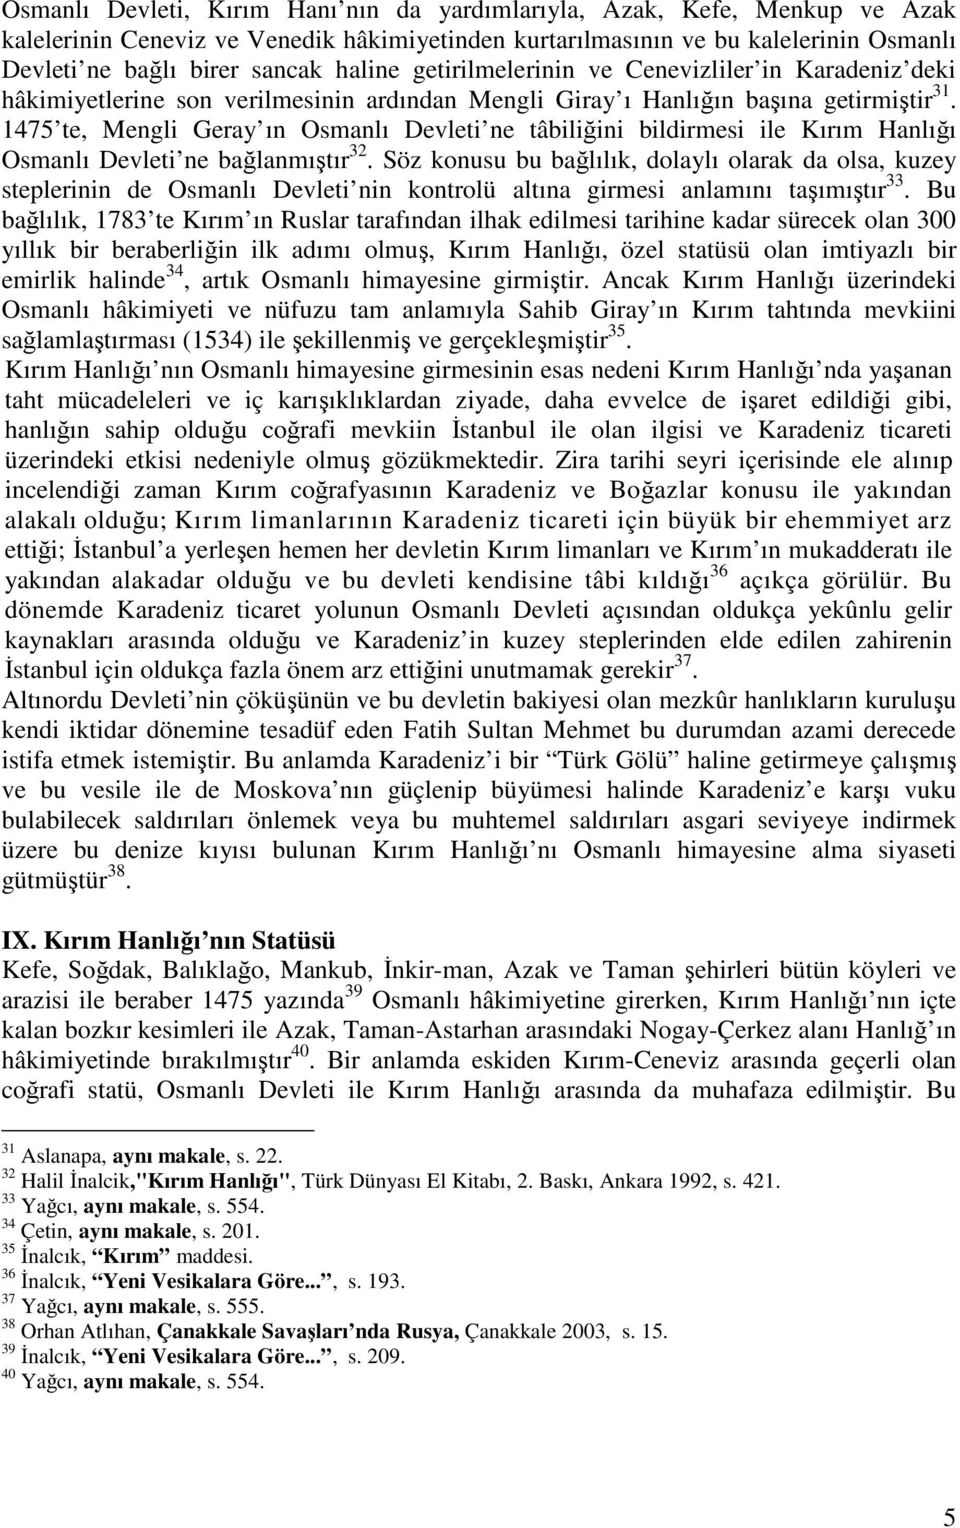 1475 te, Mengli Geray ın Osmanlı Devleti ne tâbiliini bildirmesi ile Kırım Hanlıı Osmanlı Devleti ne balanmıtır 32.